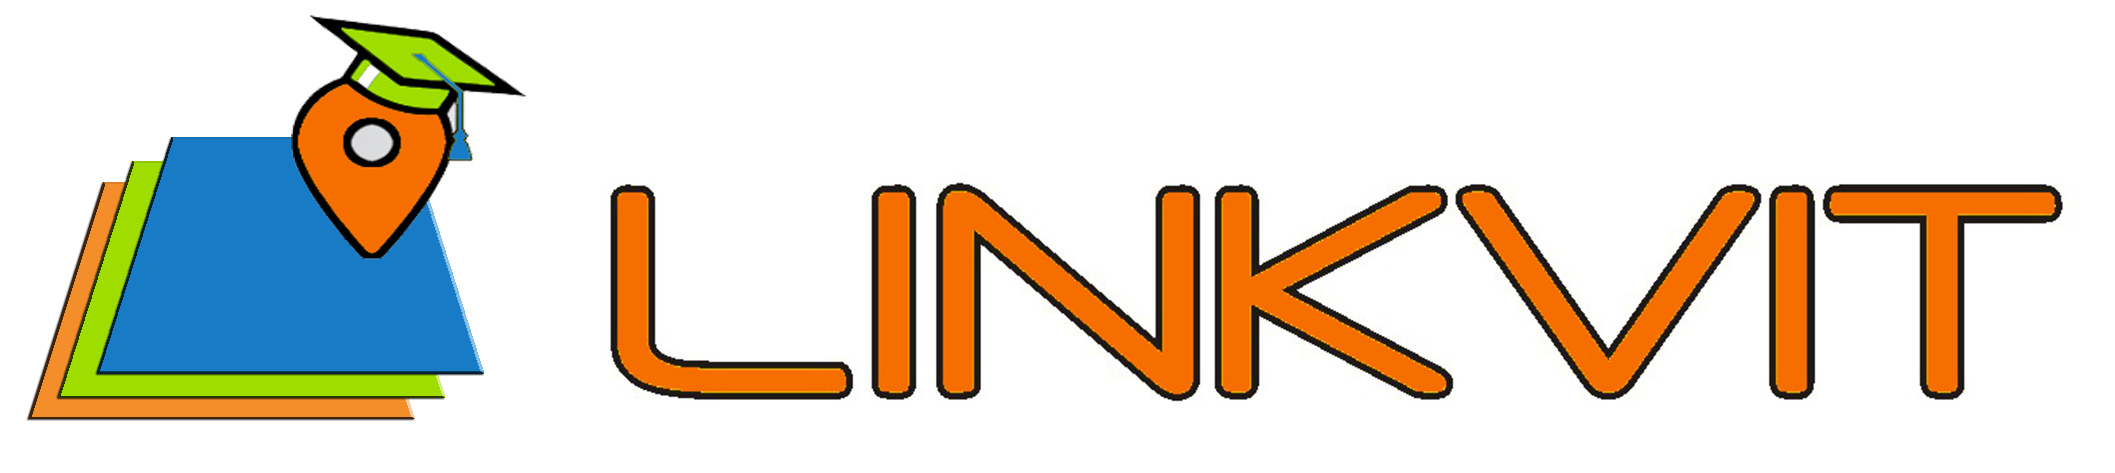 LINKVIT logo